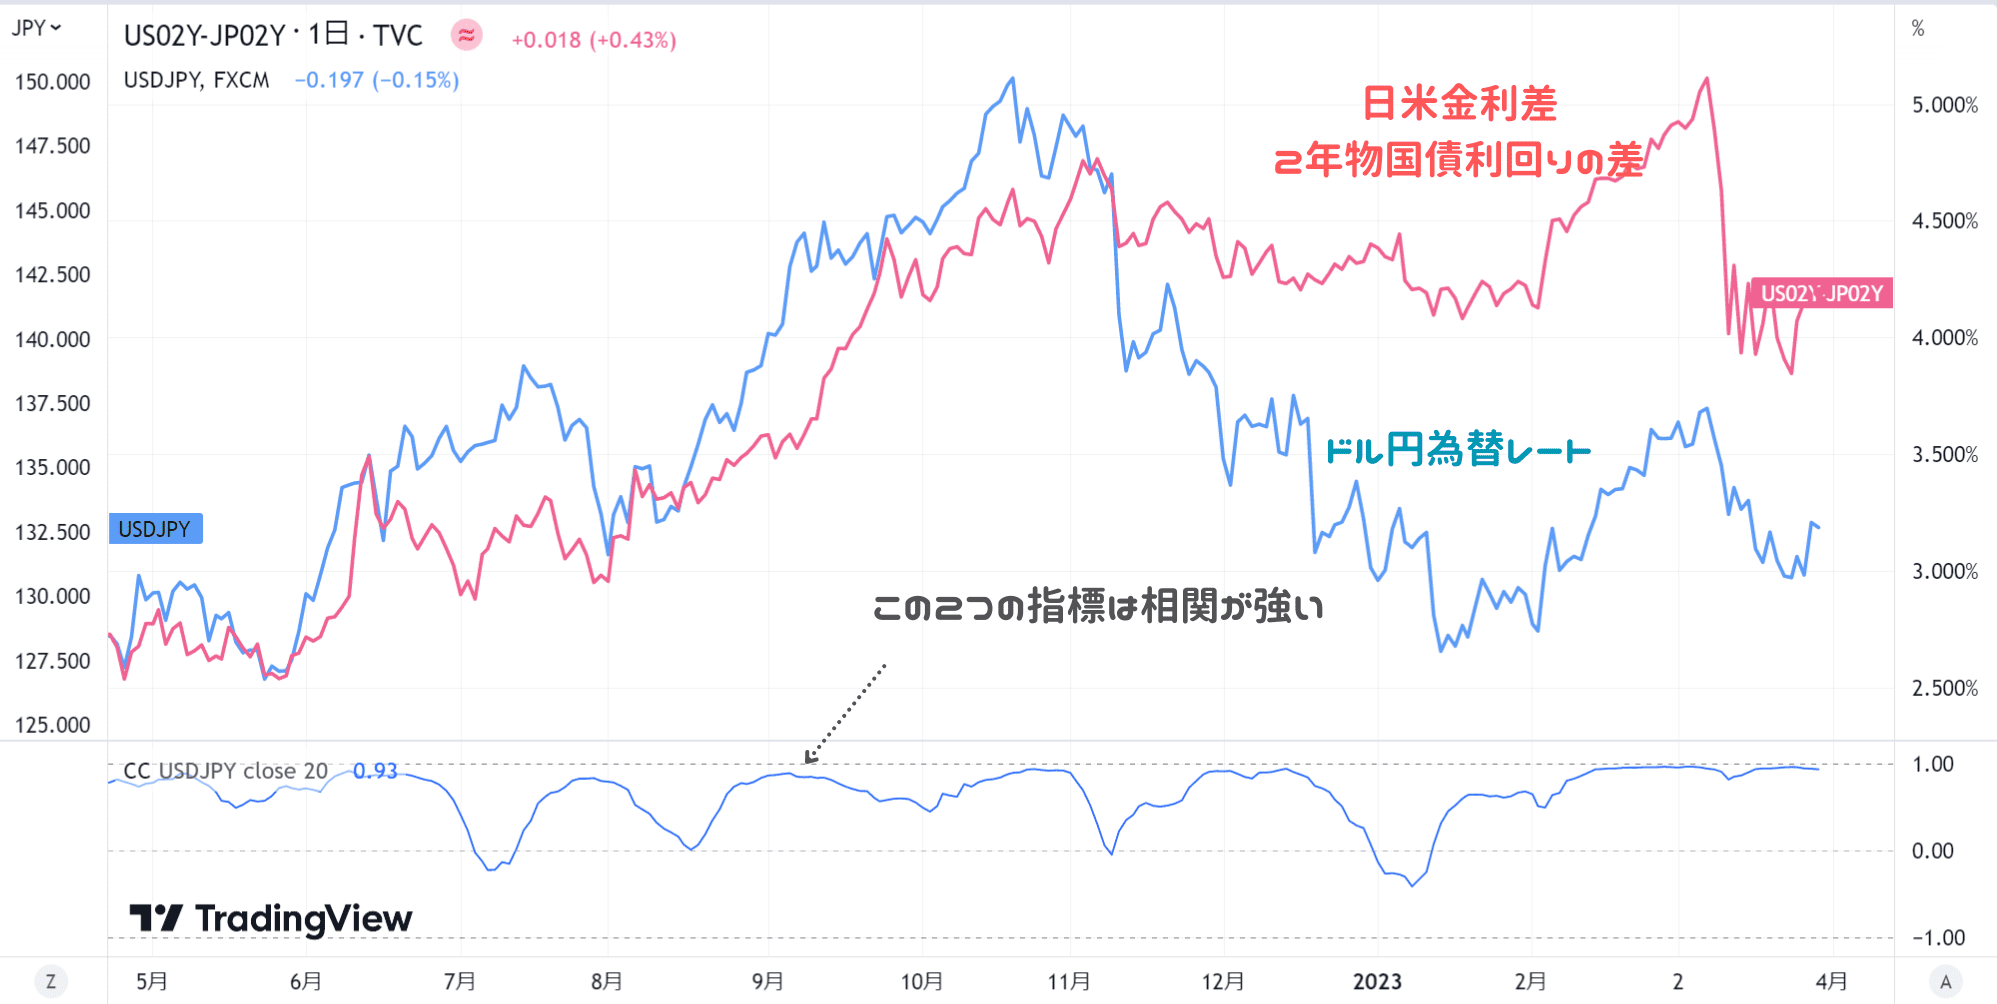 日米金利差とドル円為替レート